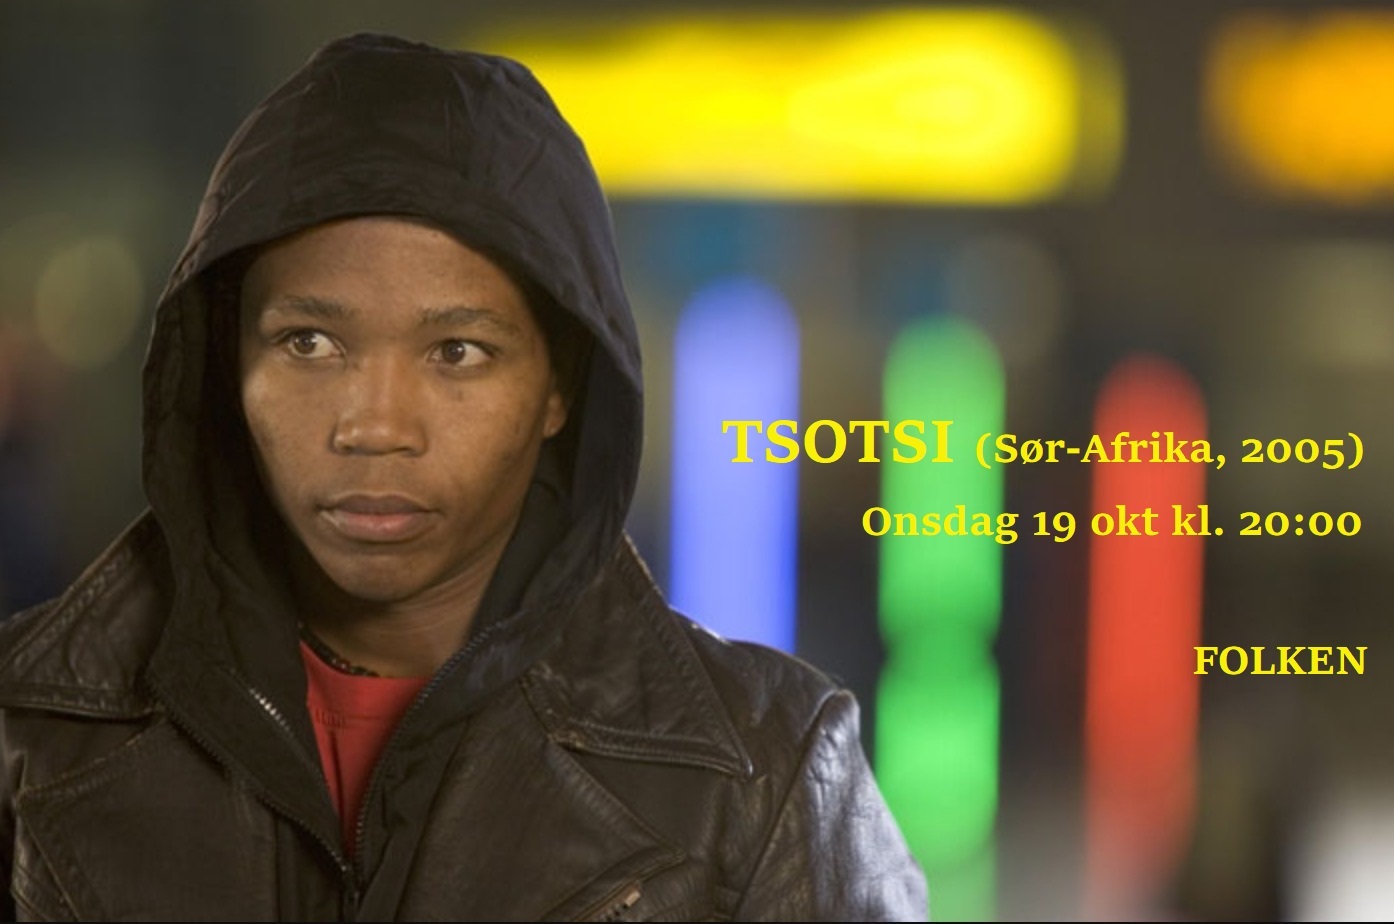 Filmklubb: Tsotsi (Sør-Afrika, 2005)